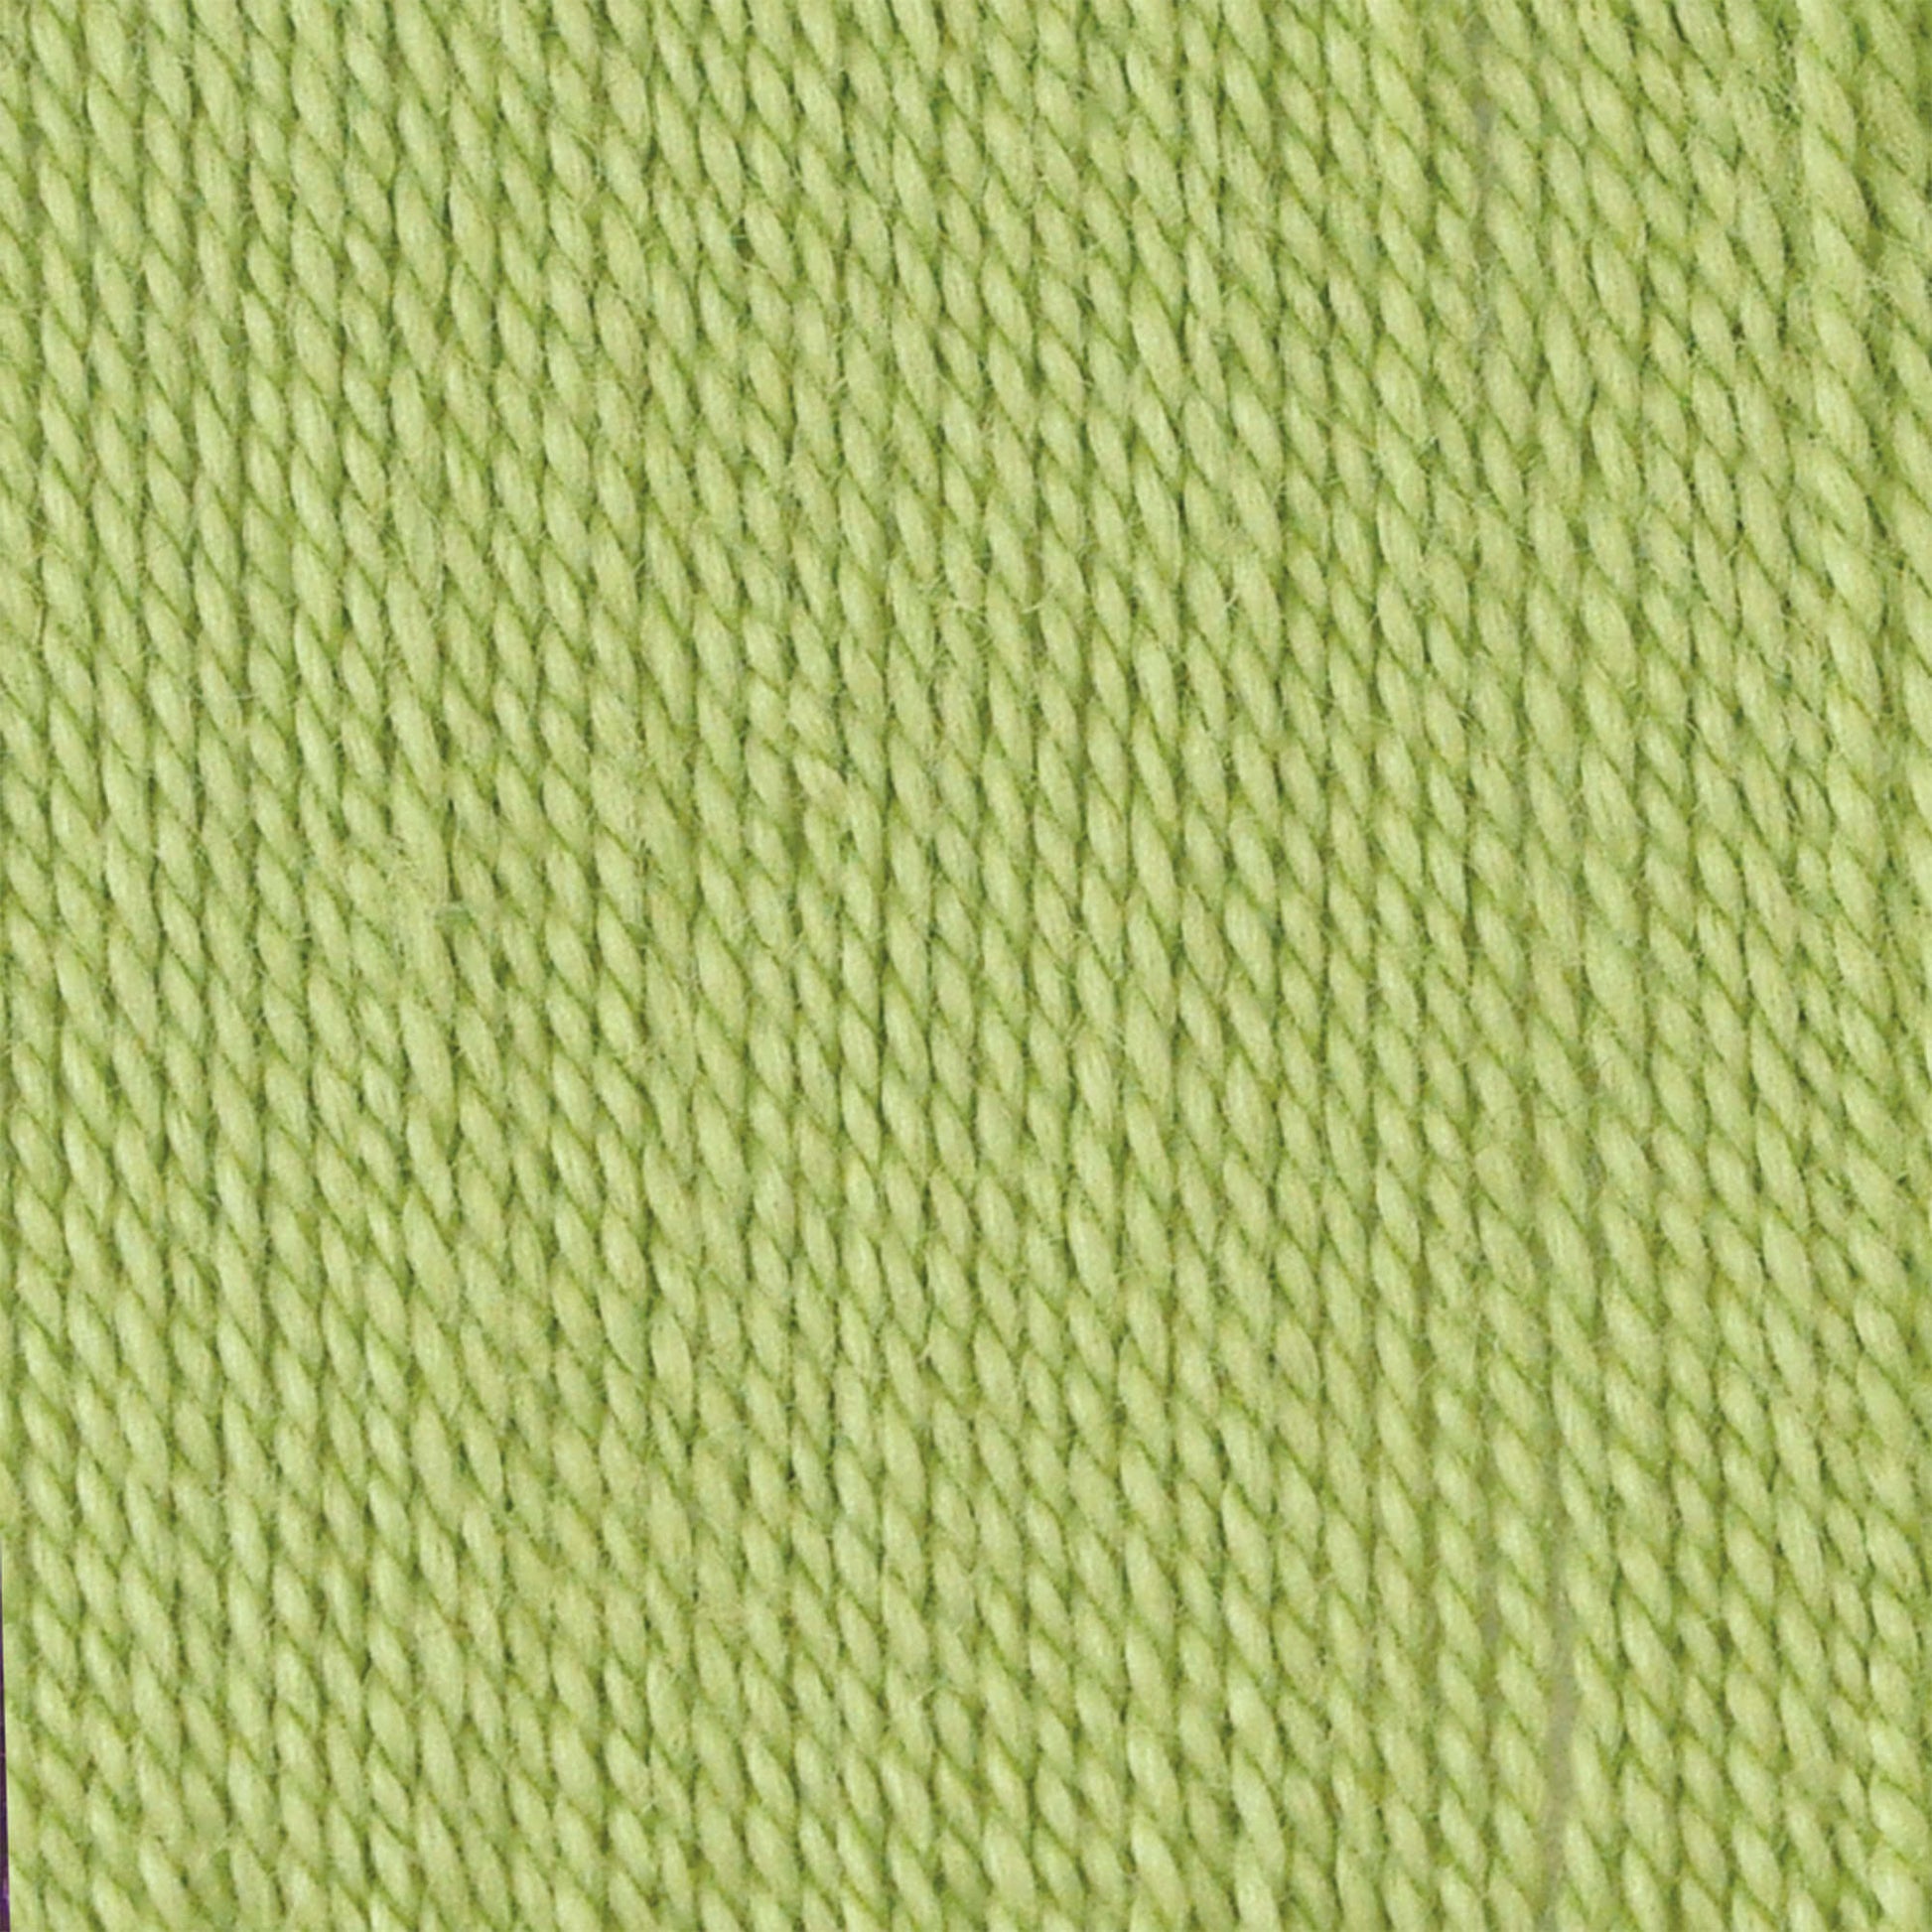 Bernat Handicrafter Crochet Thread - Discontinued